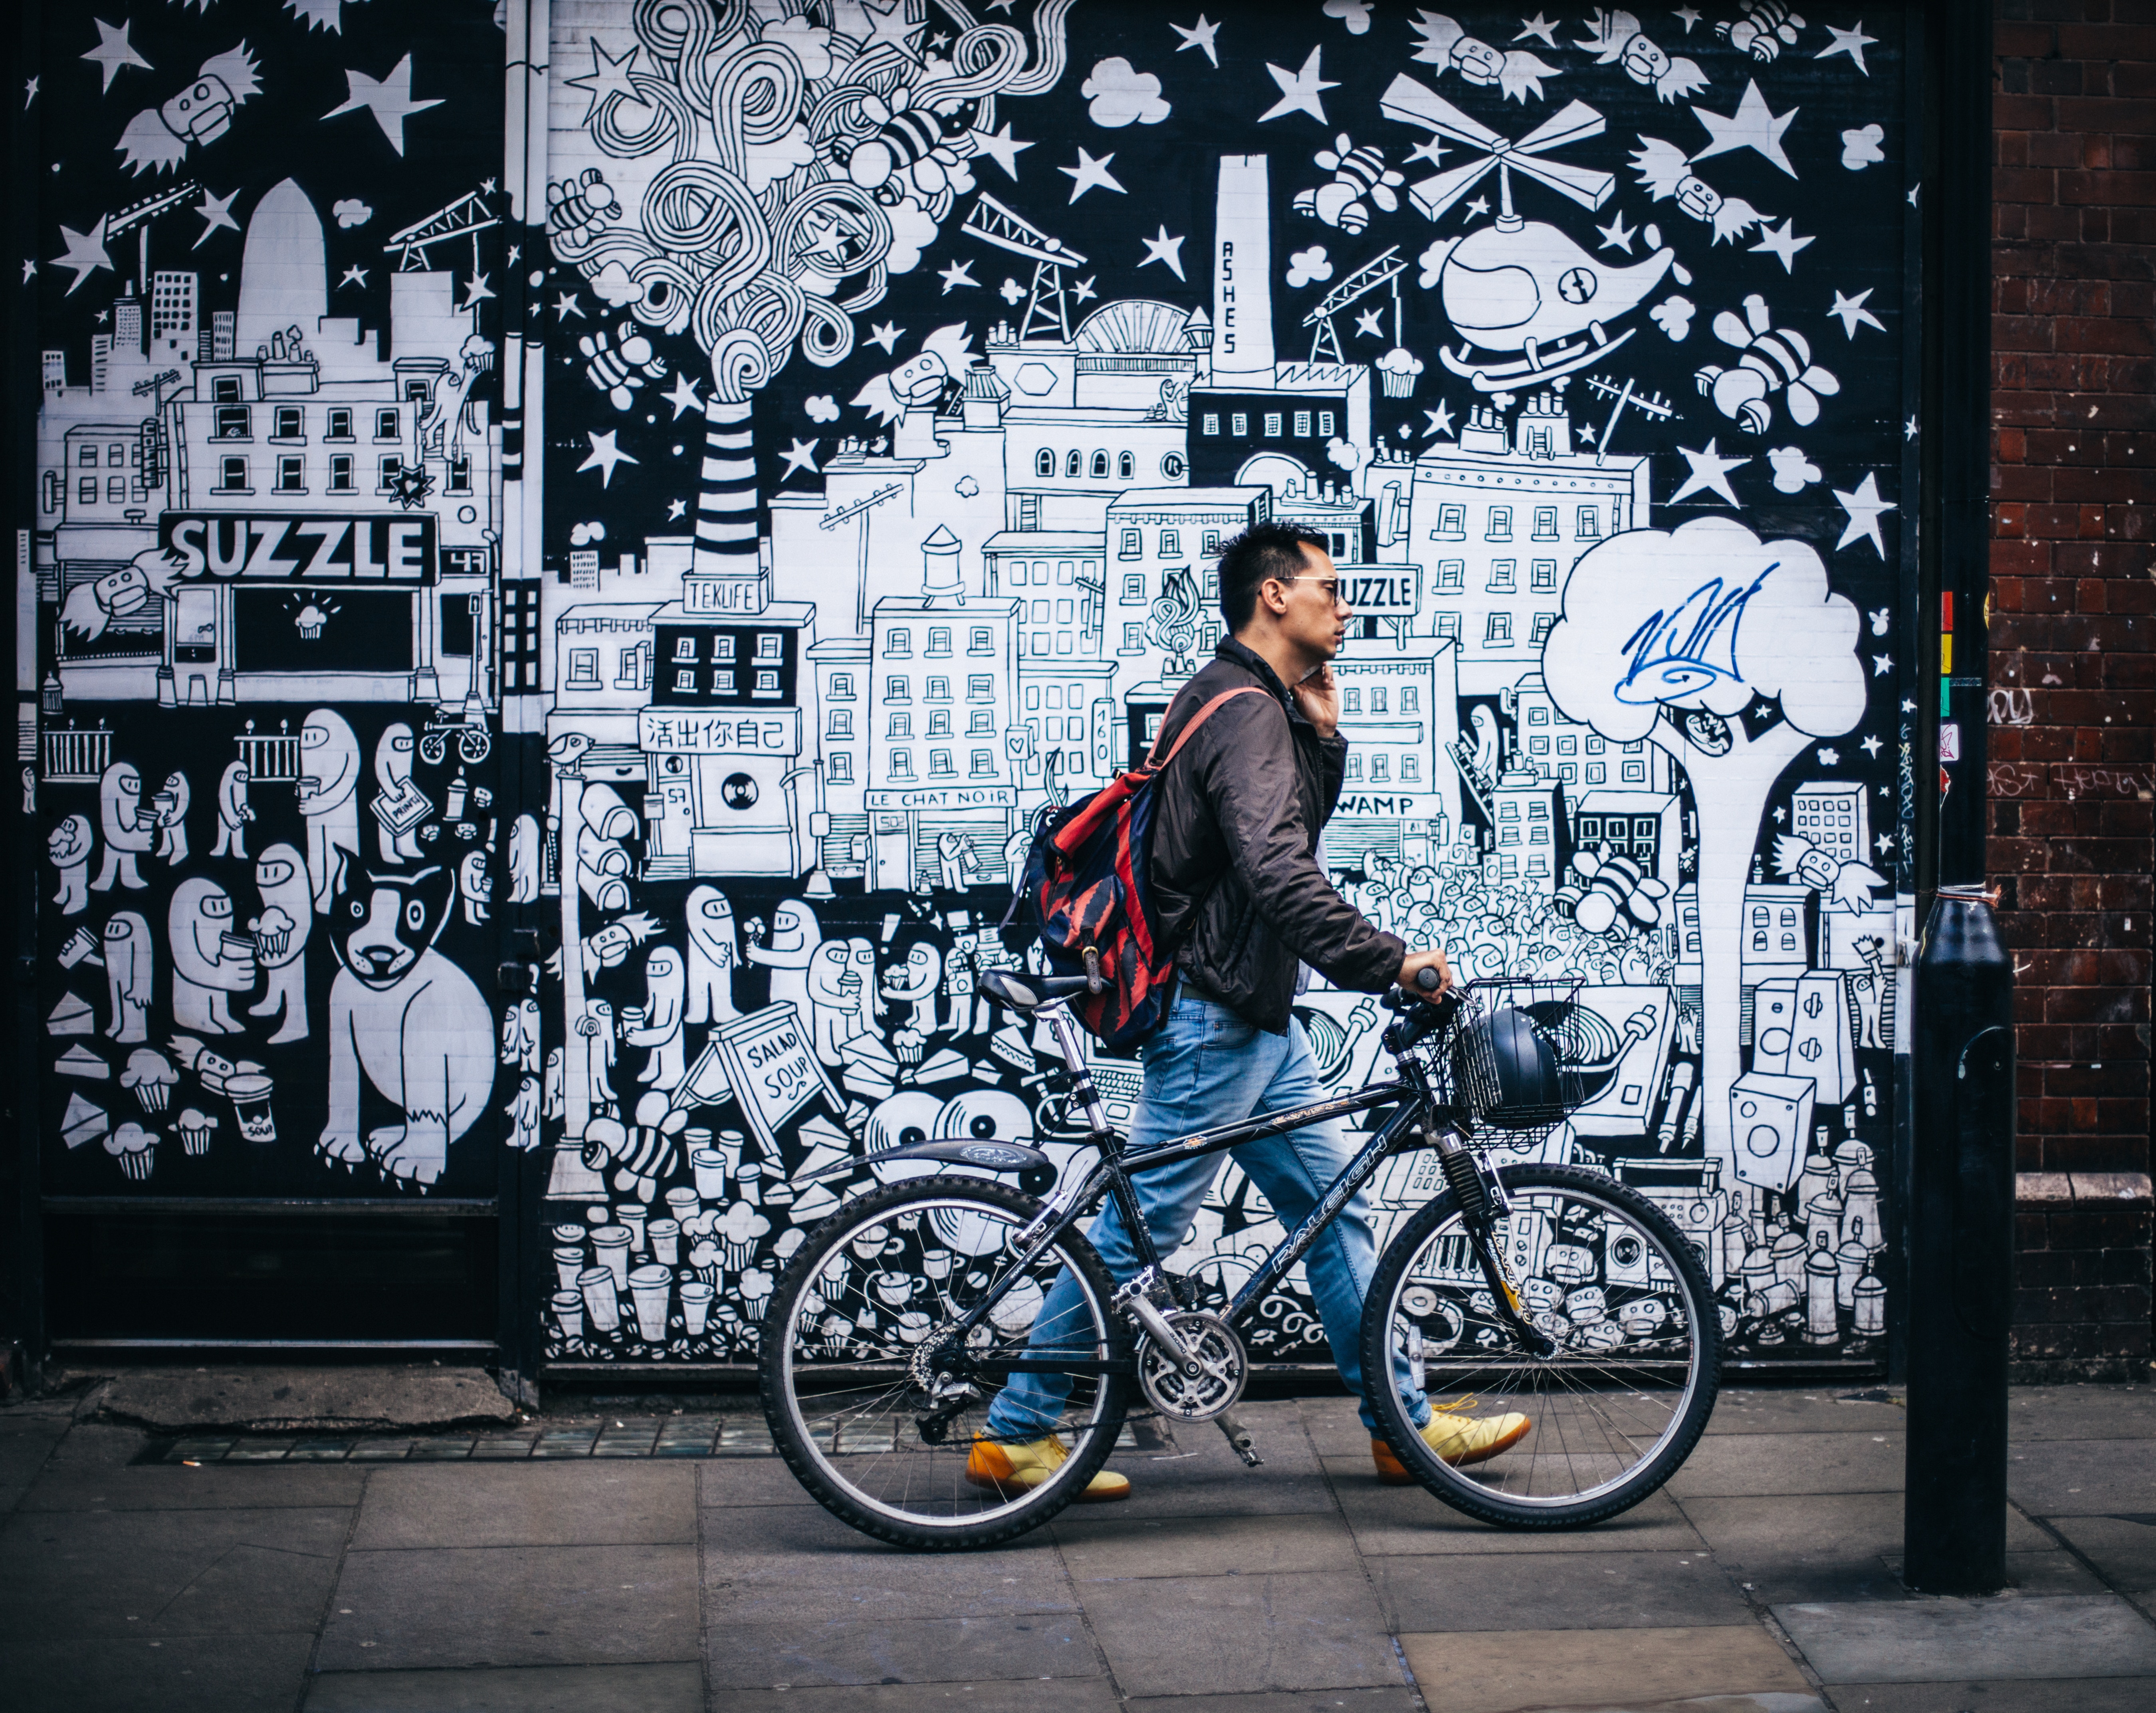 man on phone walking in front of elaborate street mural